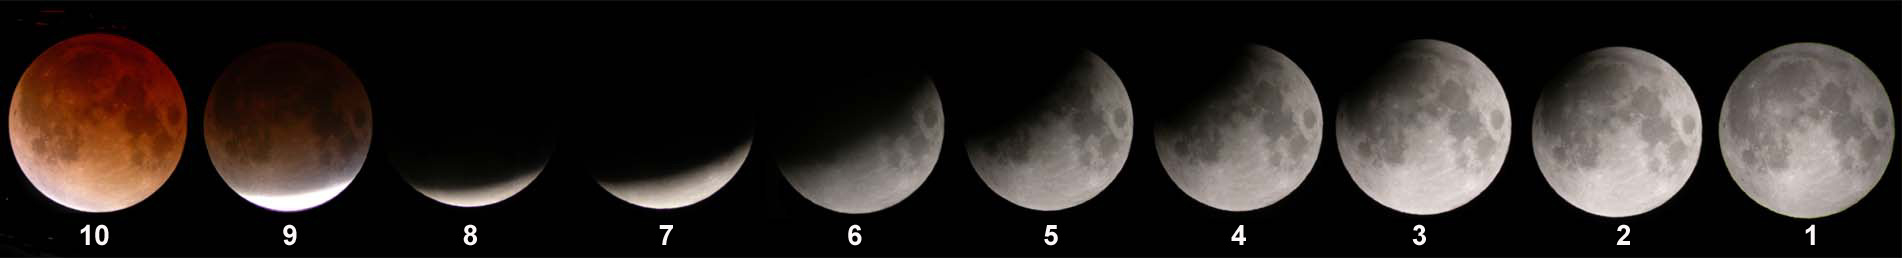 Première moitié (de droite à gauche) de l'éclipse de Lune du 8-9 novembre 2003